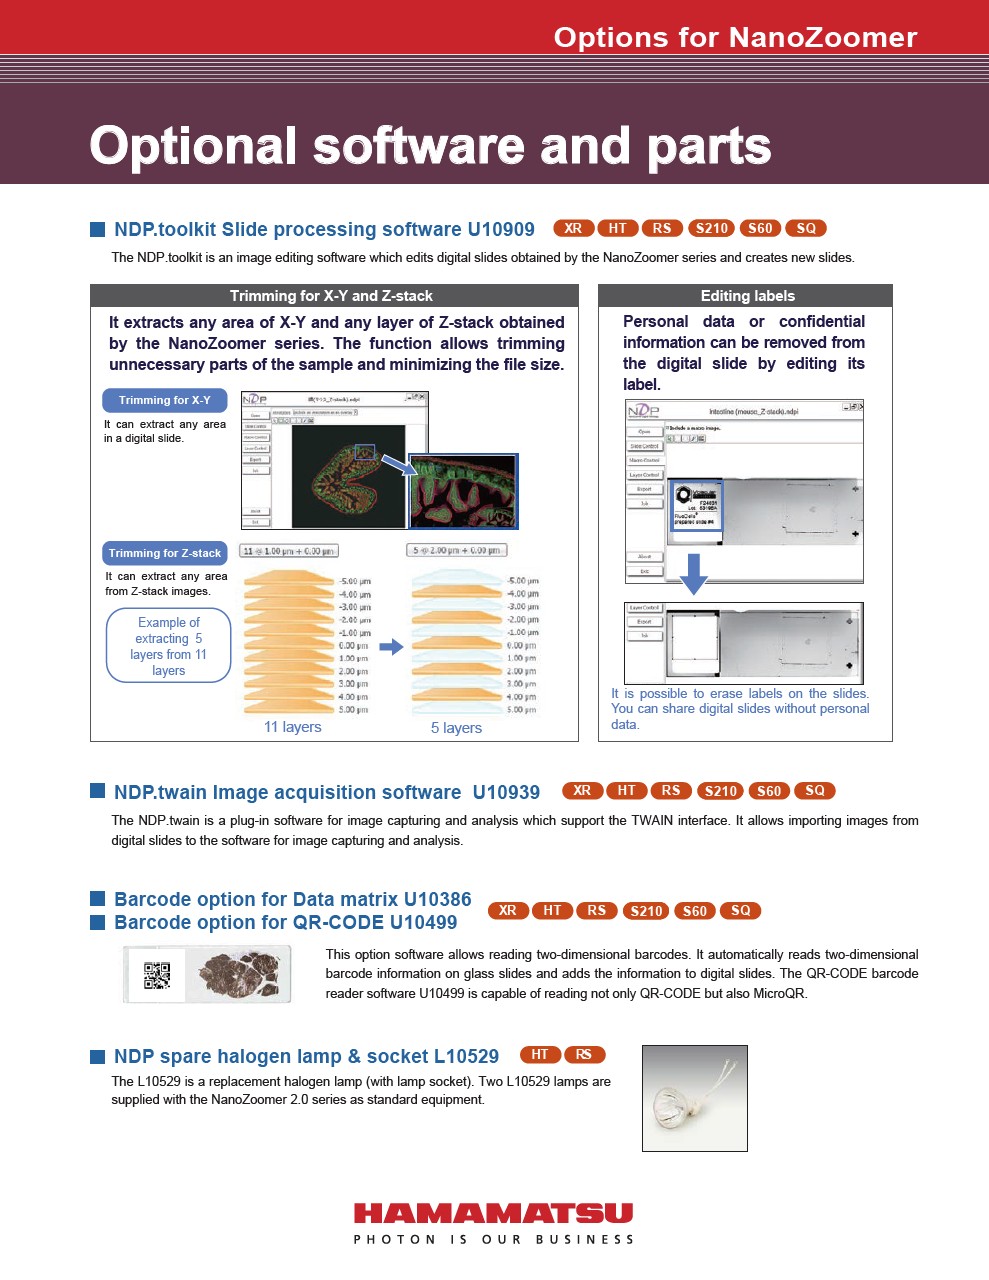 Optional software and parts (NanoZoomer)